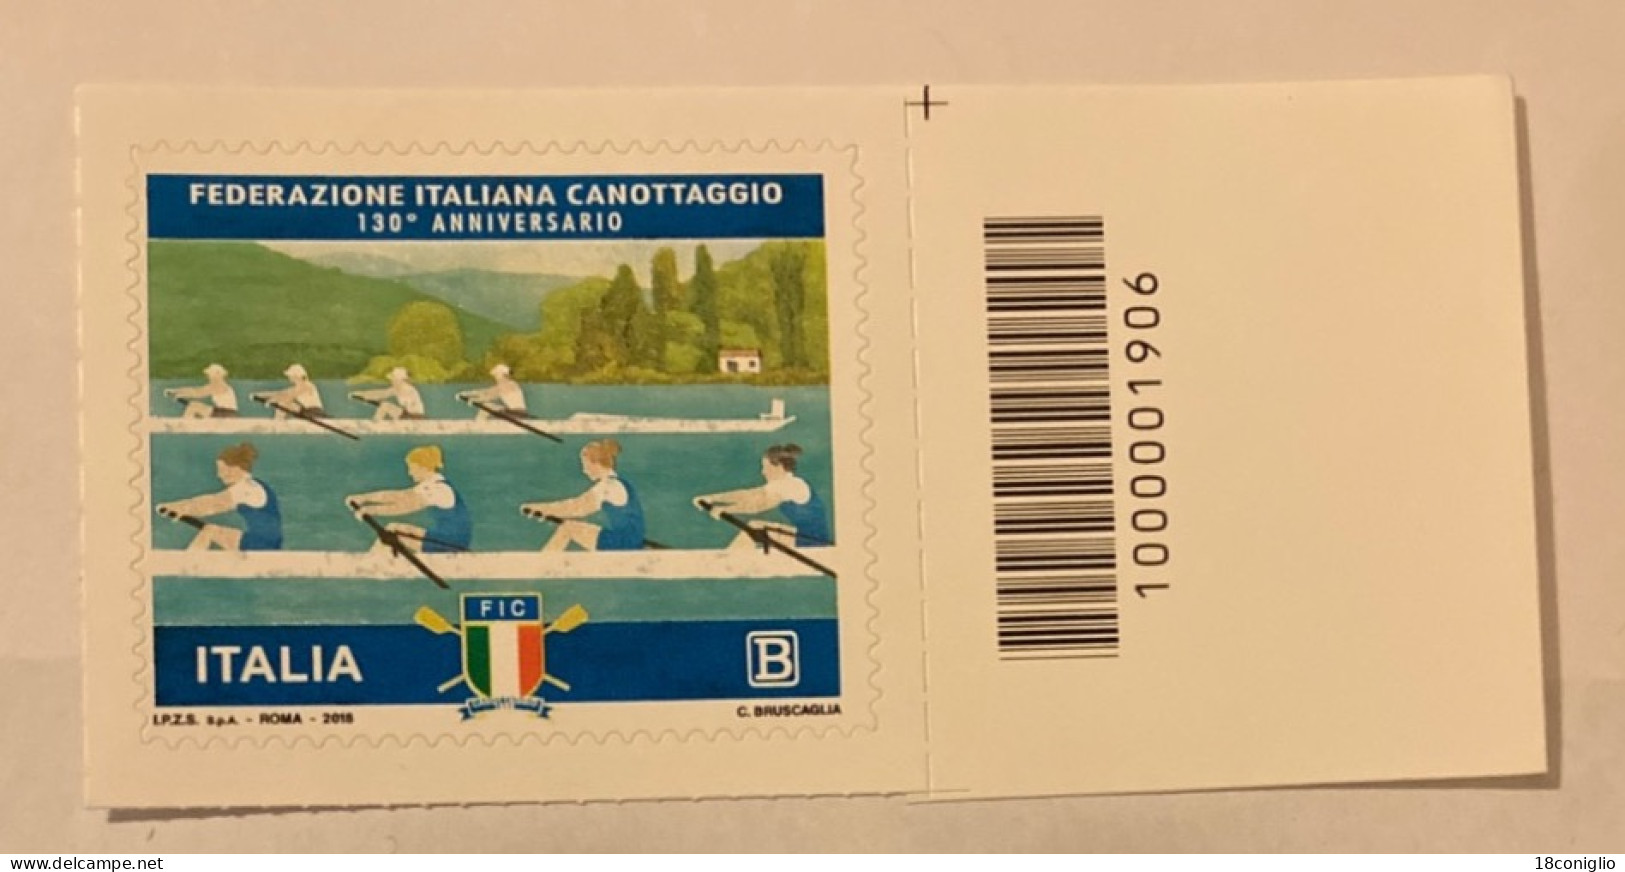 Italia 2018 Codice A Barre 1906 Federazione Italiana Canottaggio - Barcodes